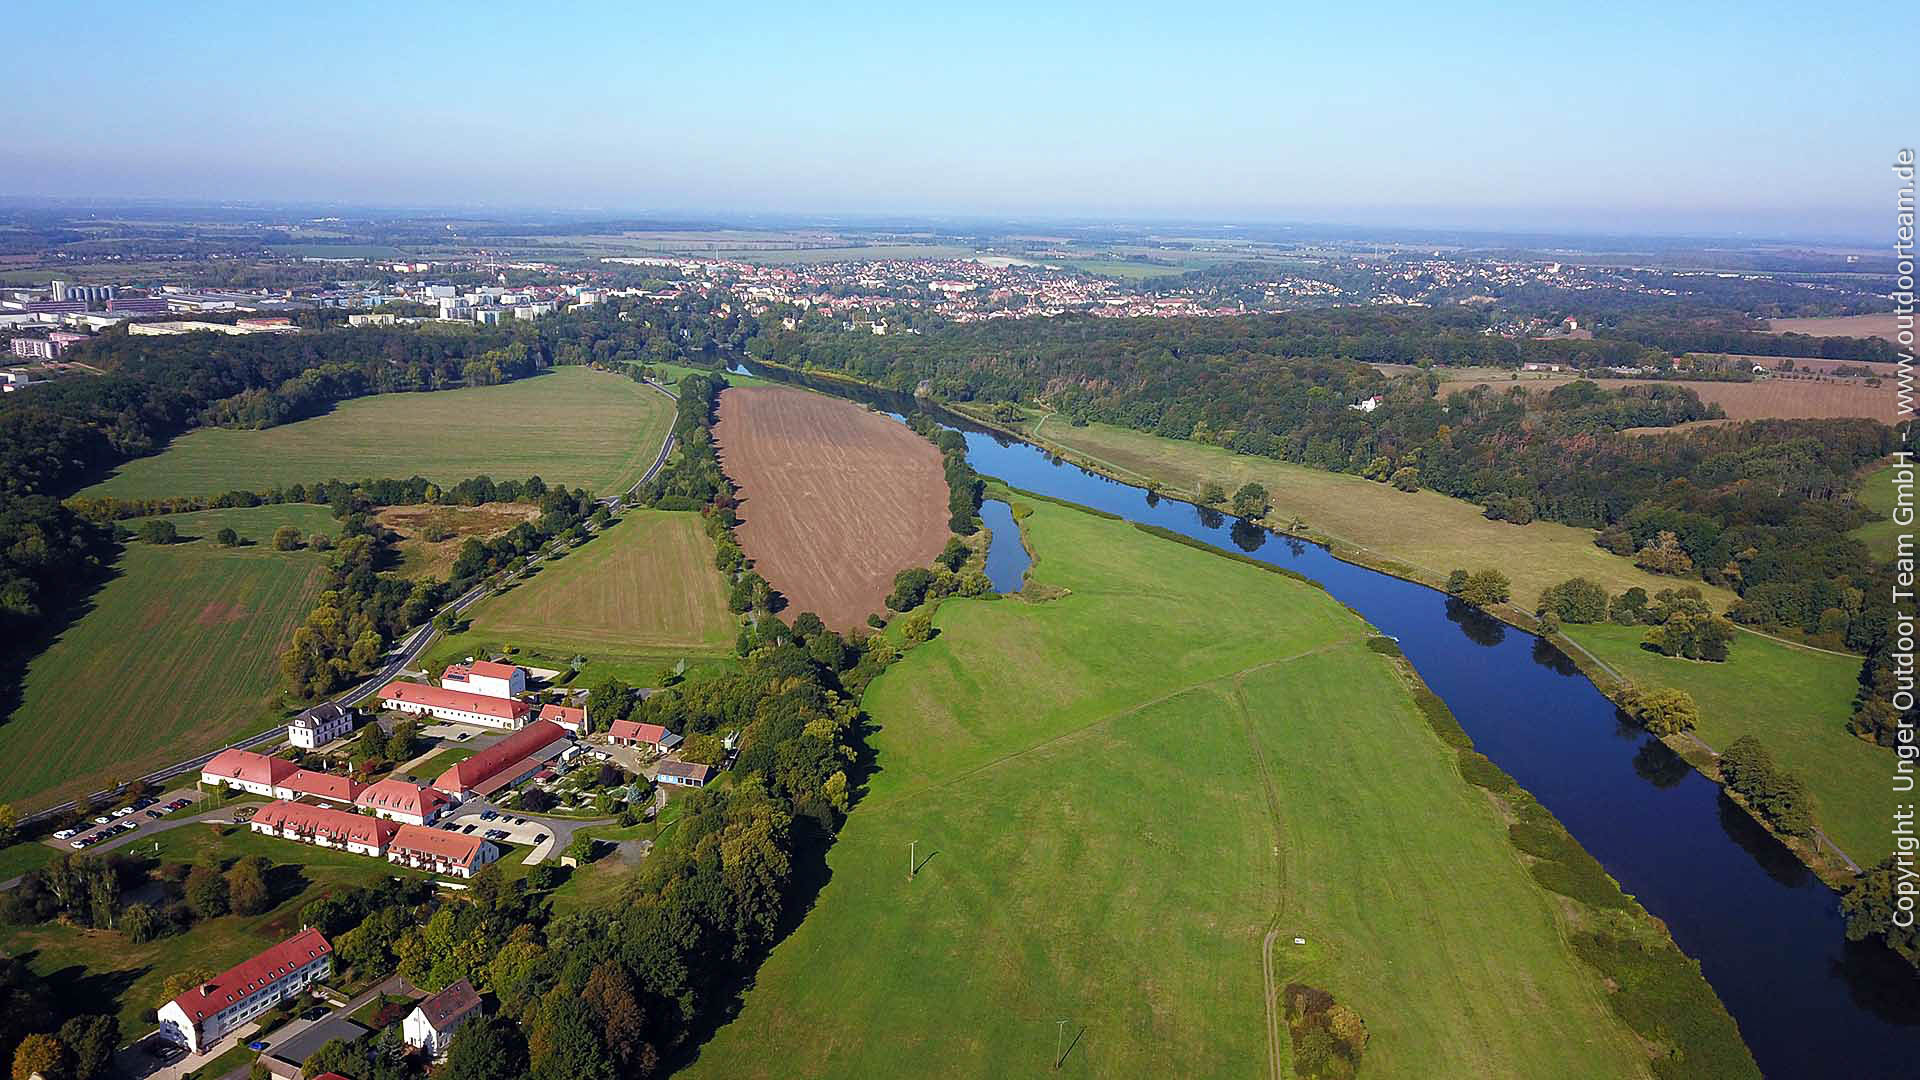 Luftbild bzw. Fernblick nach Norden: Kloster Nimbschen (links) und am Horizont die Stadt Grimma